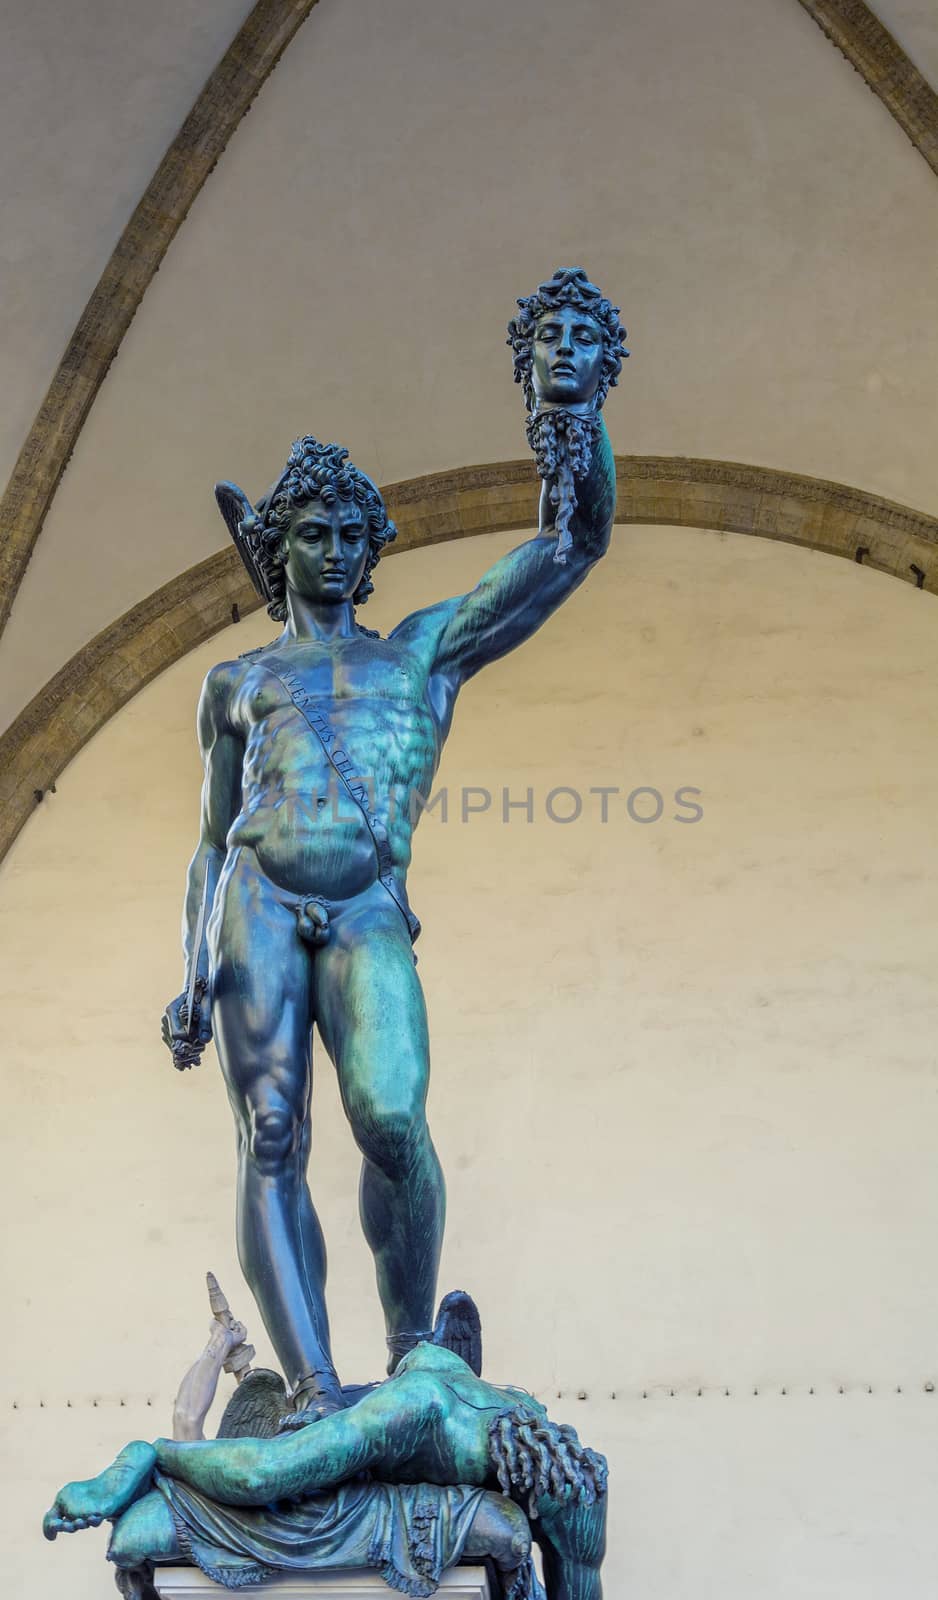 The bronze sculpture of Perseus with the Head of Medusa  made by Benvenuto Cellini in 1545.It is located in the Loggia dei Lanzi of the Piazza della Signoria.